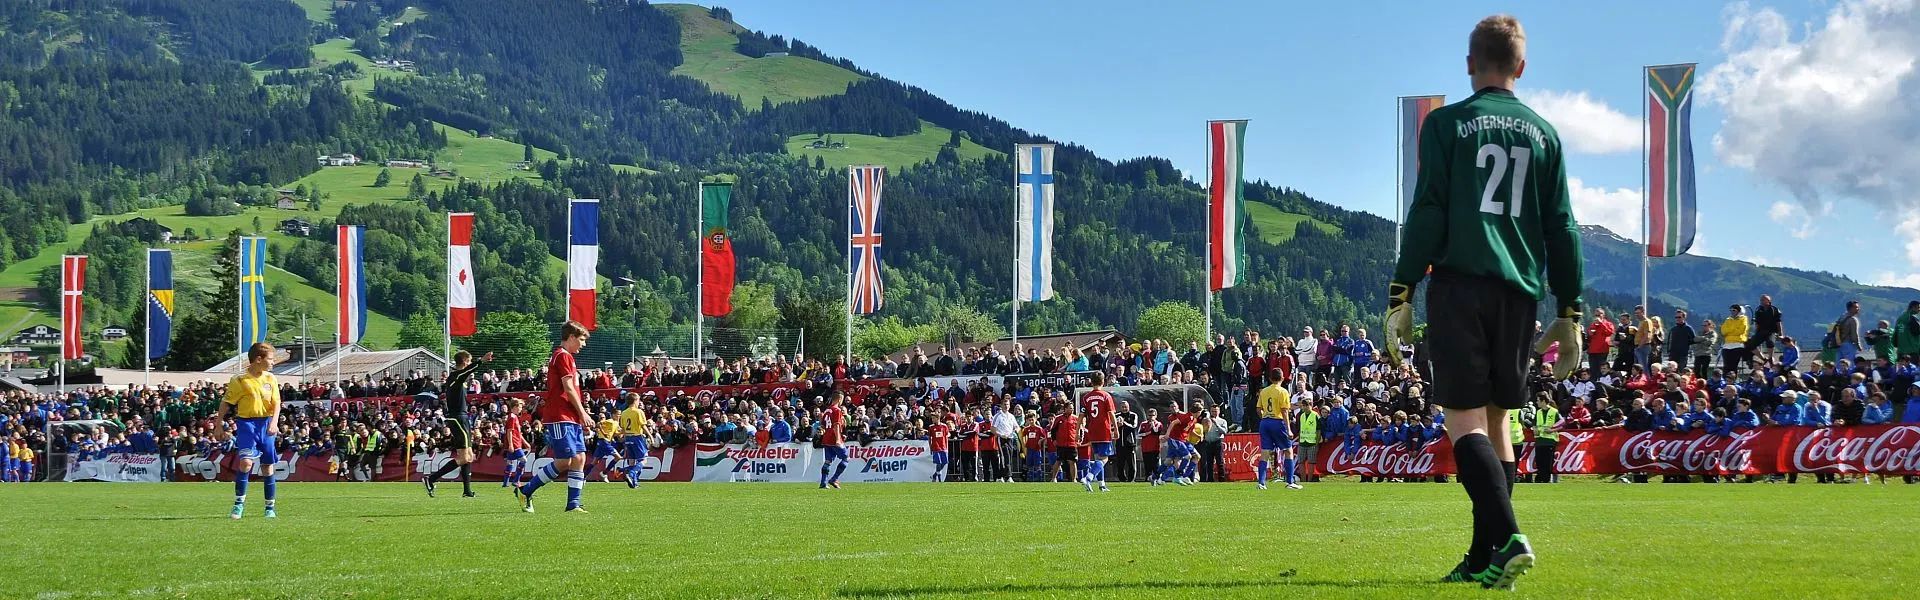 Cordial Cup Kitzbüheler Horn - Region St. Johann in Tirol